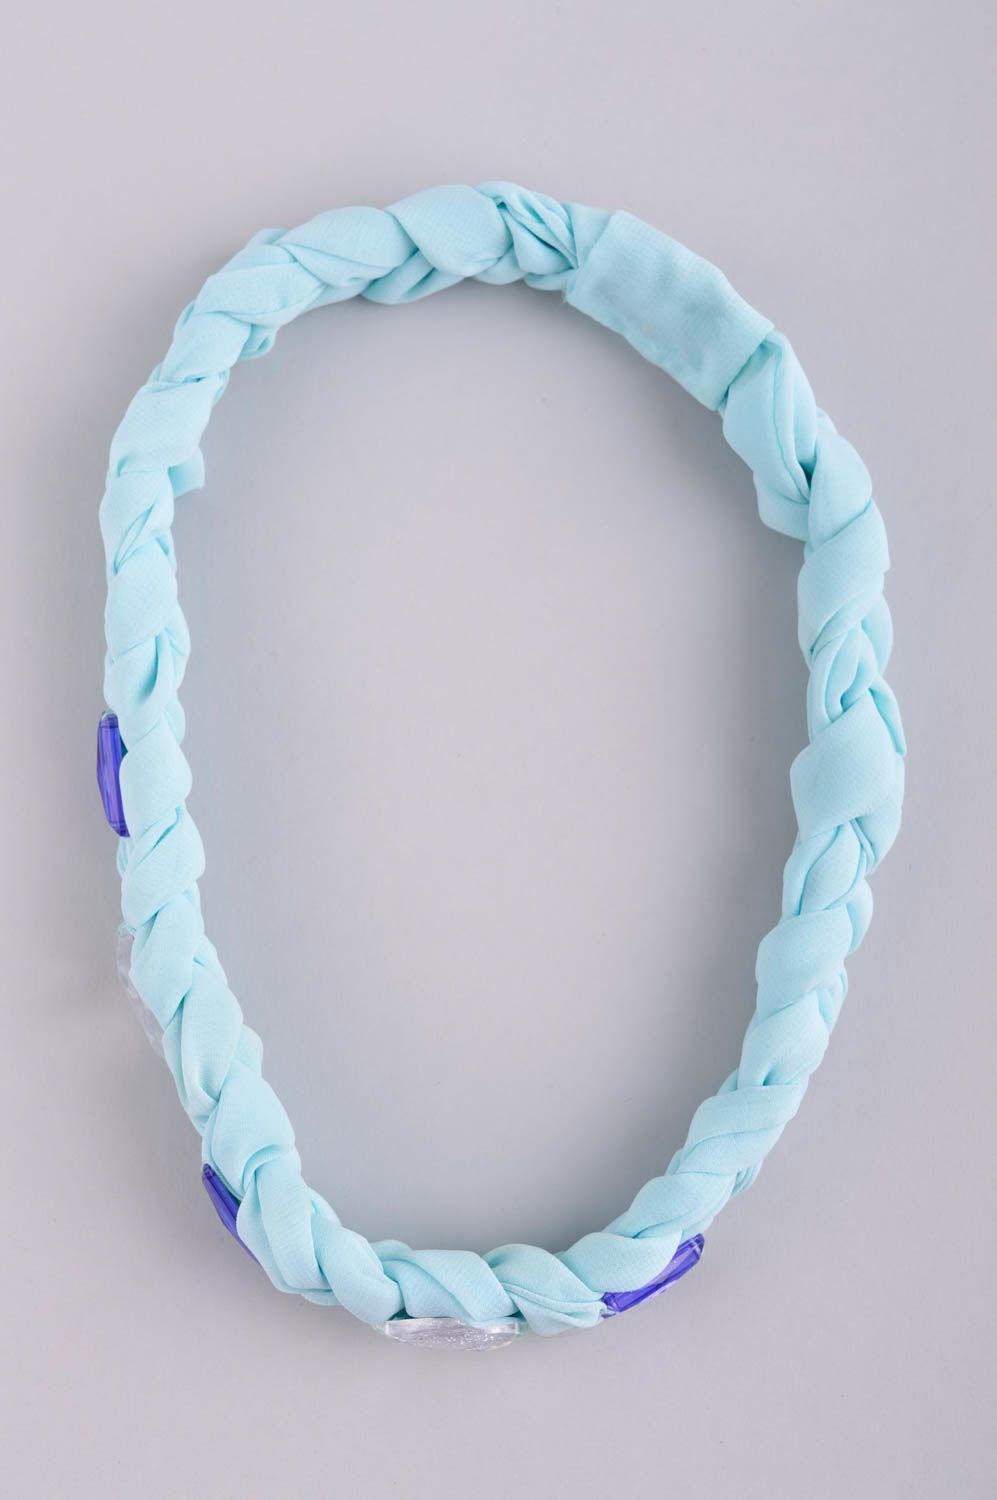 Полоска для волос ручной работы аксессуар для прически женский аксессуар голубой фото 4